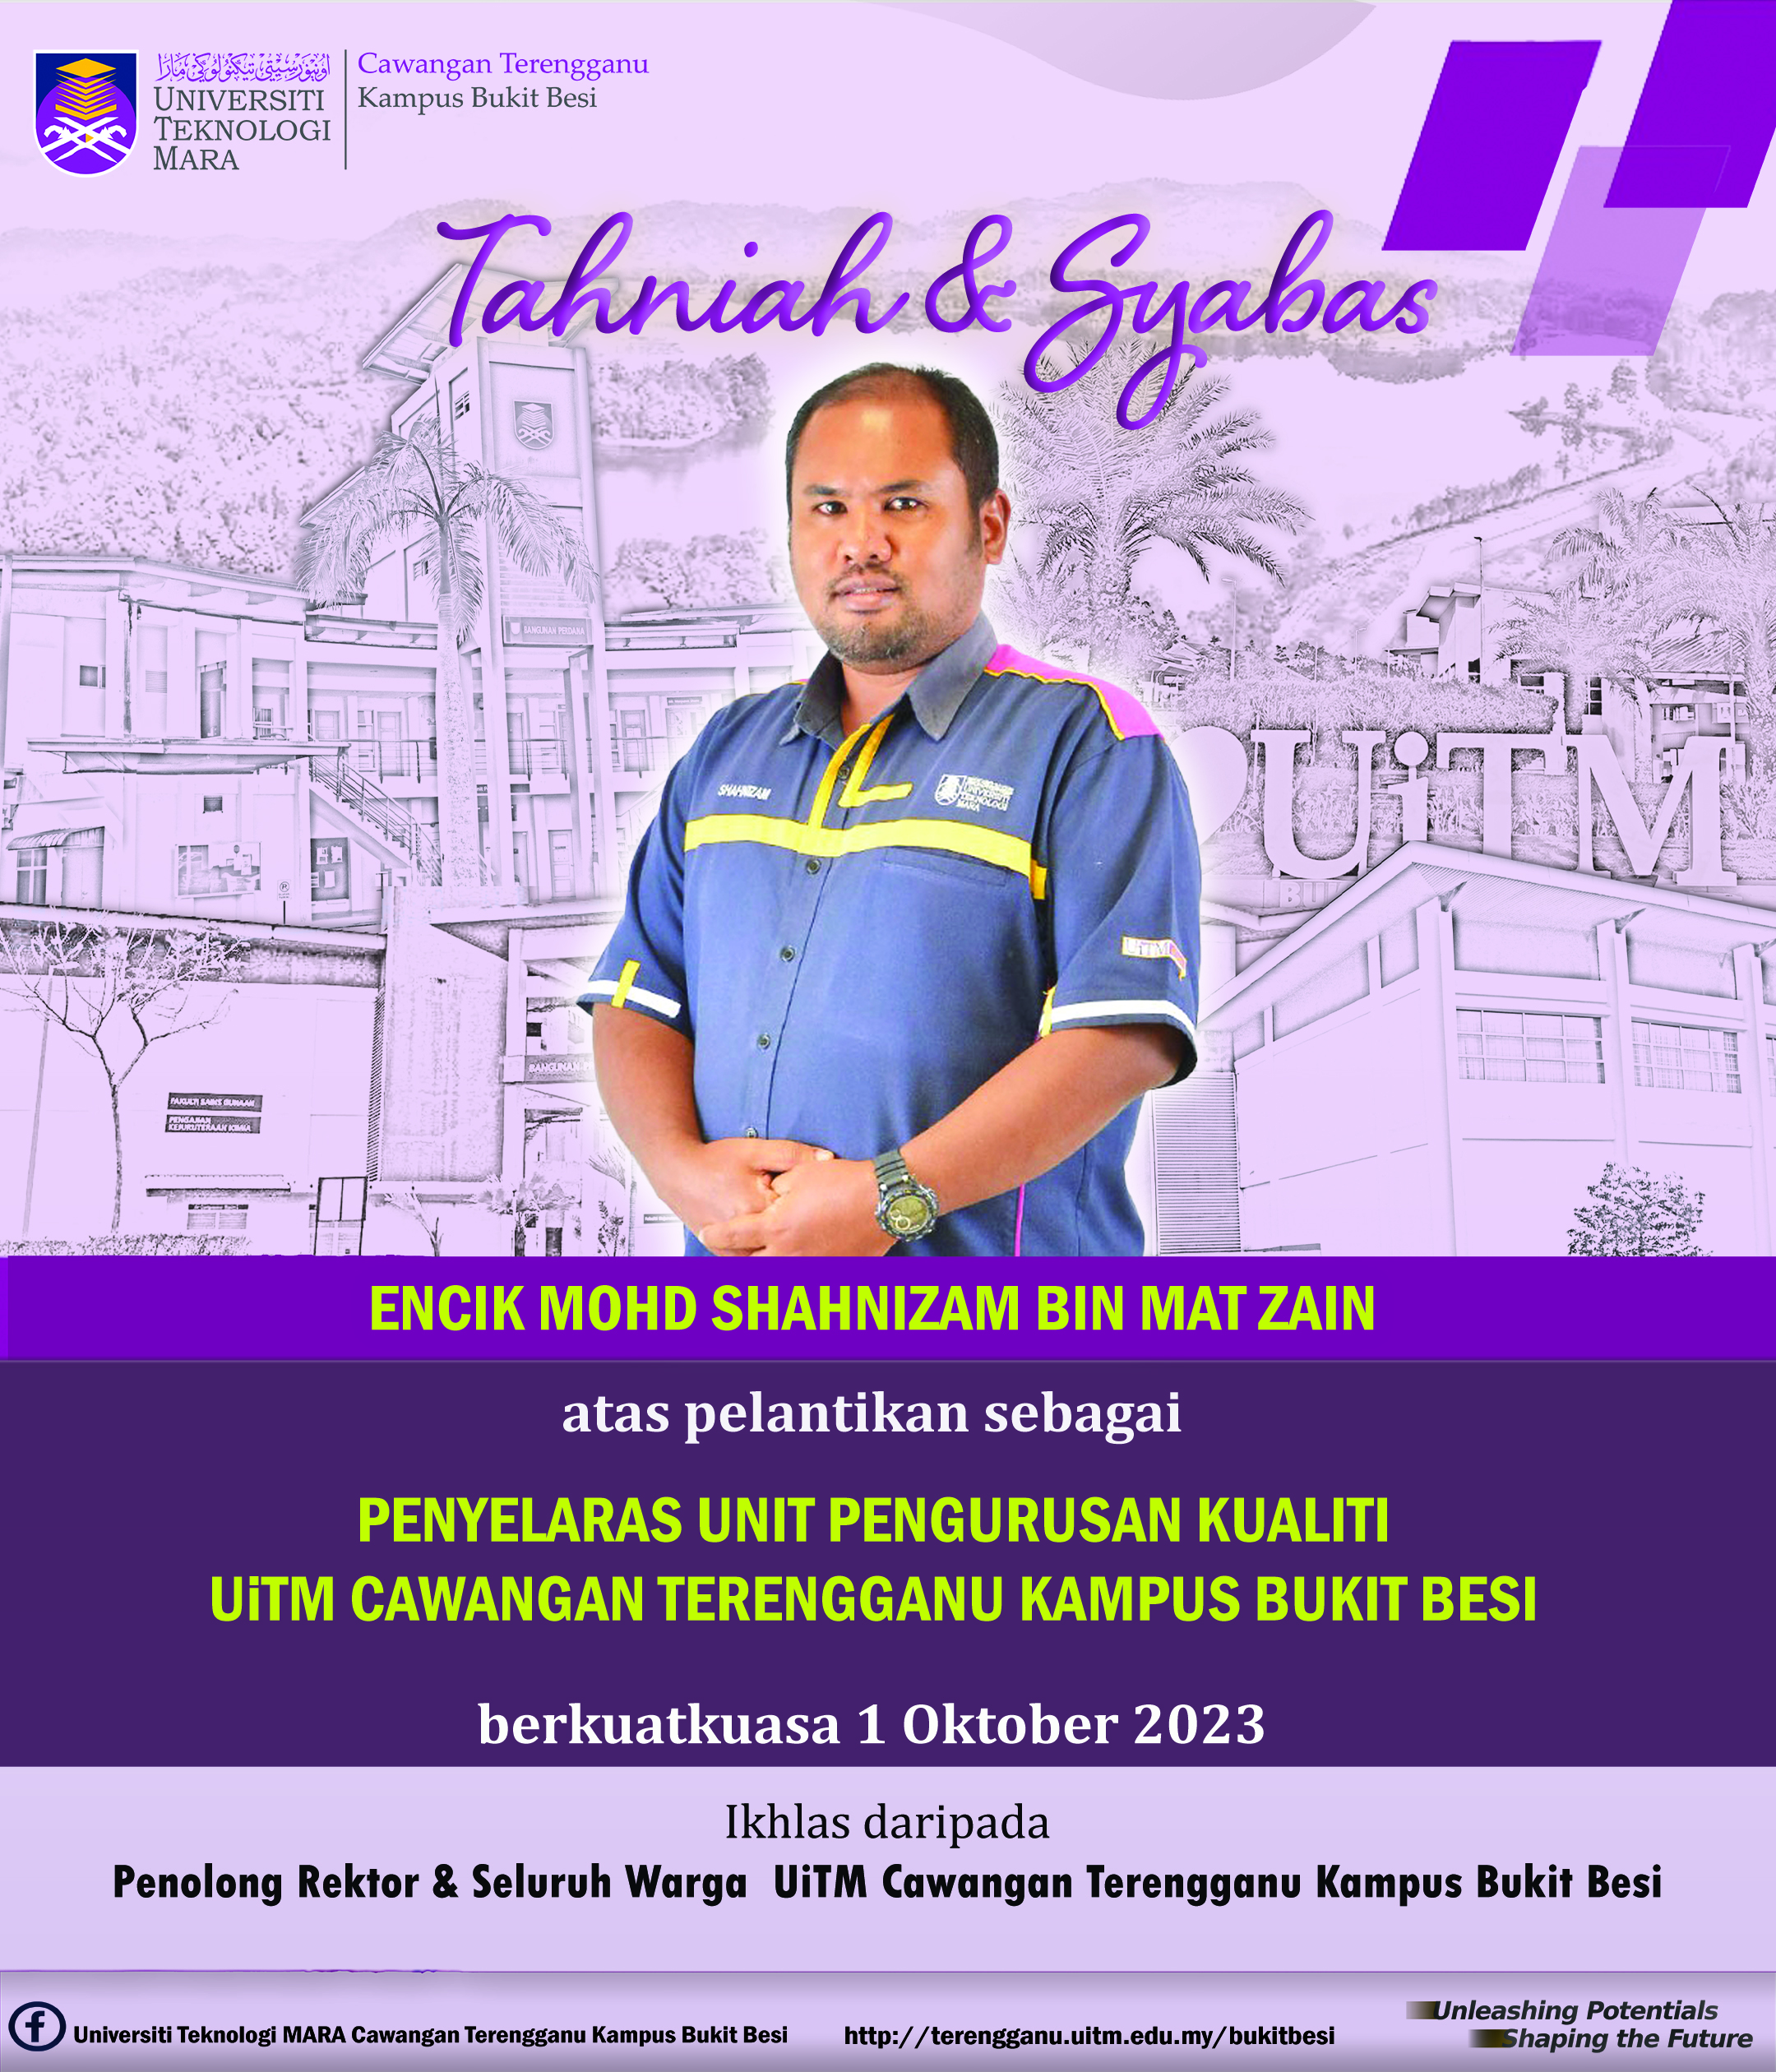 Tahniah dan Syabas Encik Mohd Shahnizam Bin Mat Zain atas Perlantikan sebagai Penyelaras Unit Penguruan Kualiti UiTM Cawangan Terengganu Kampus Bukit Besi